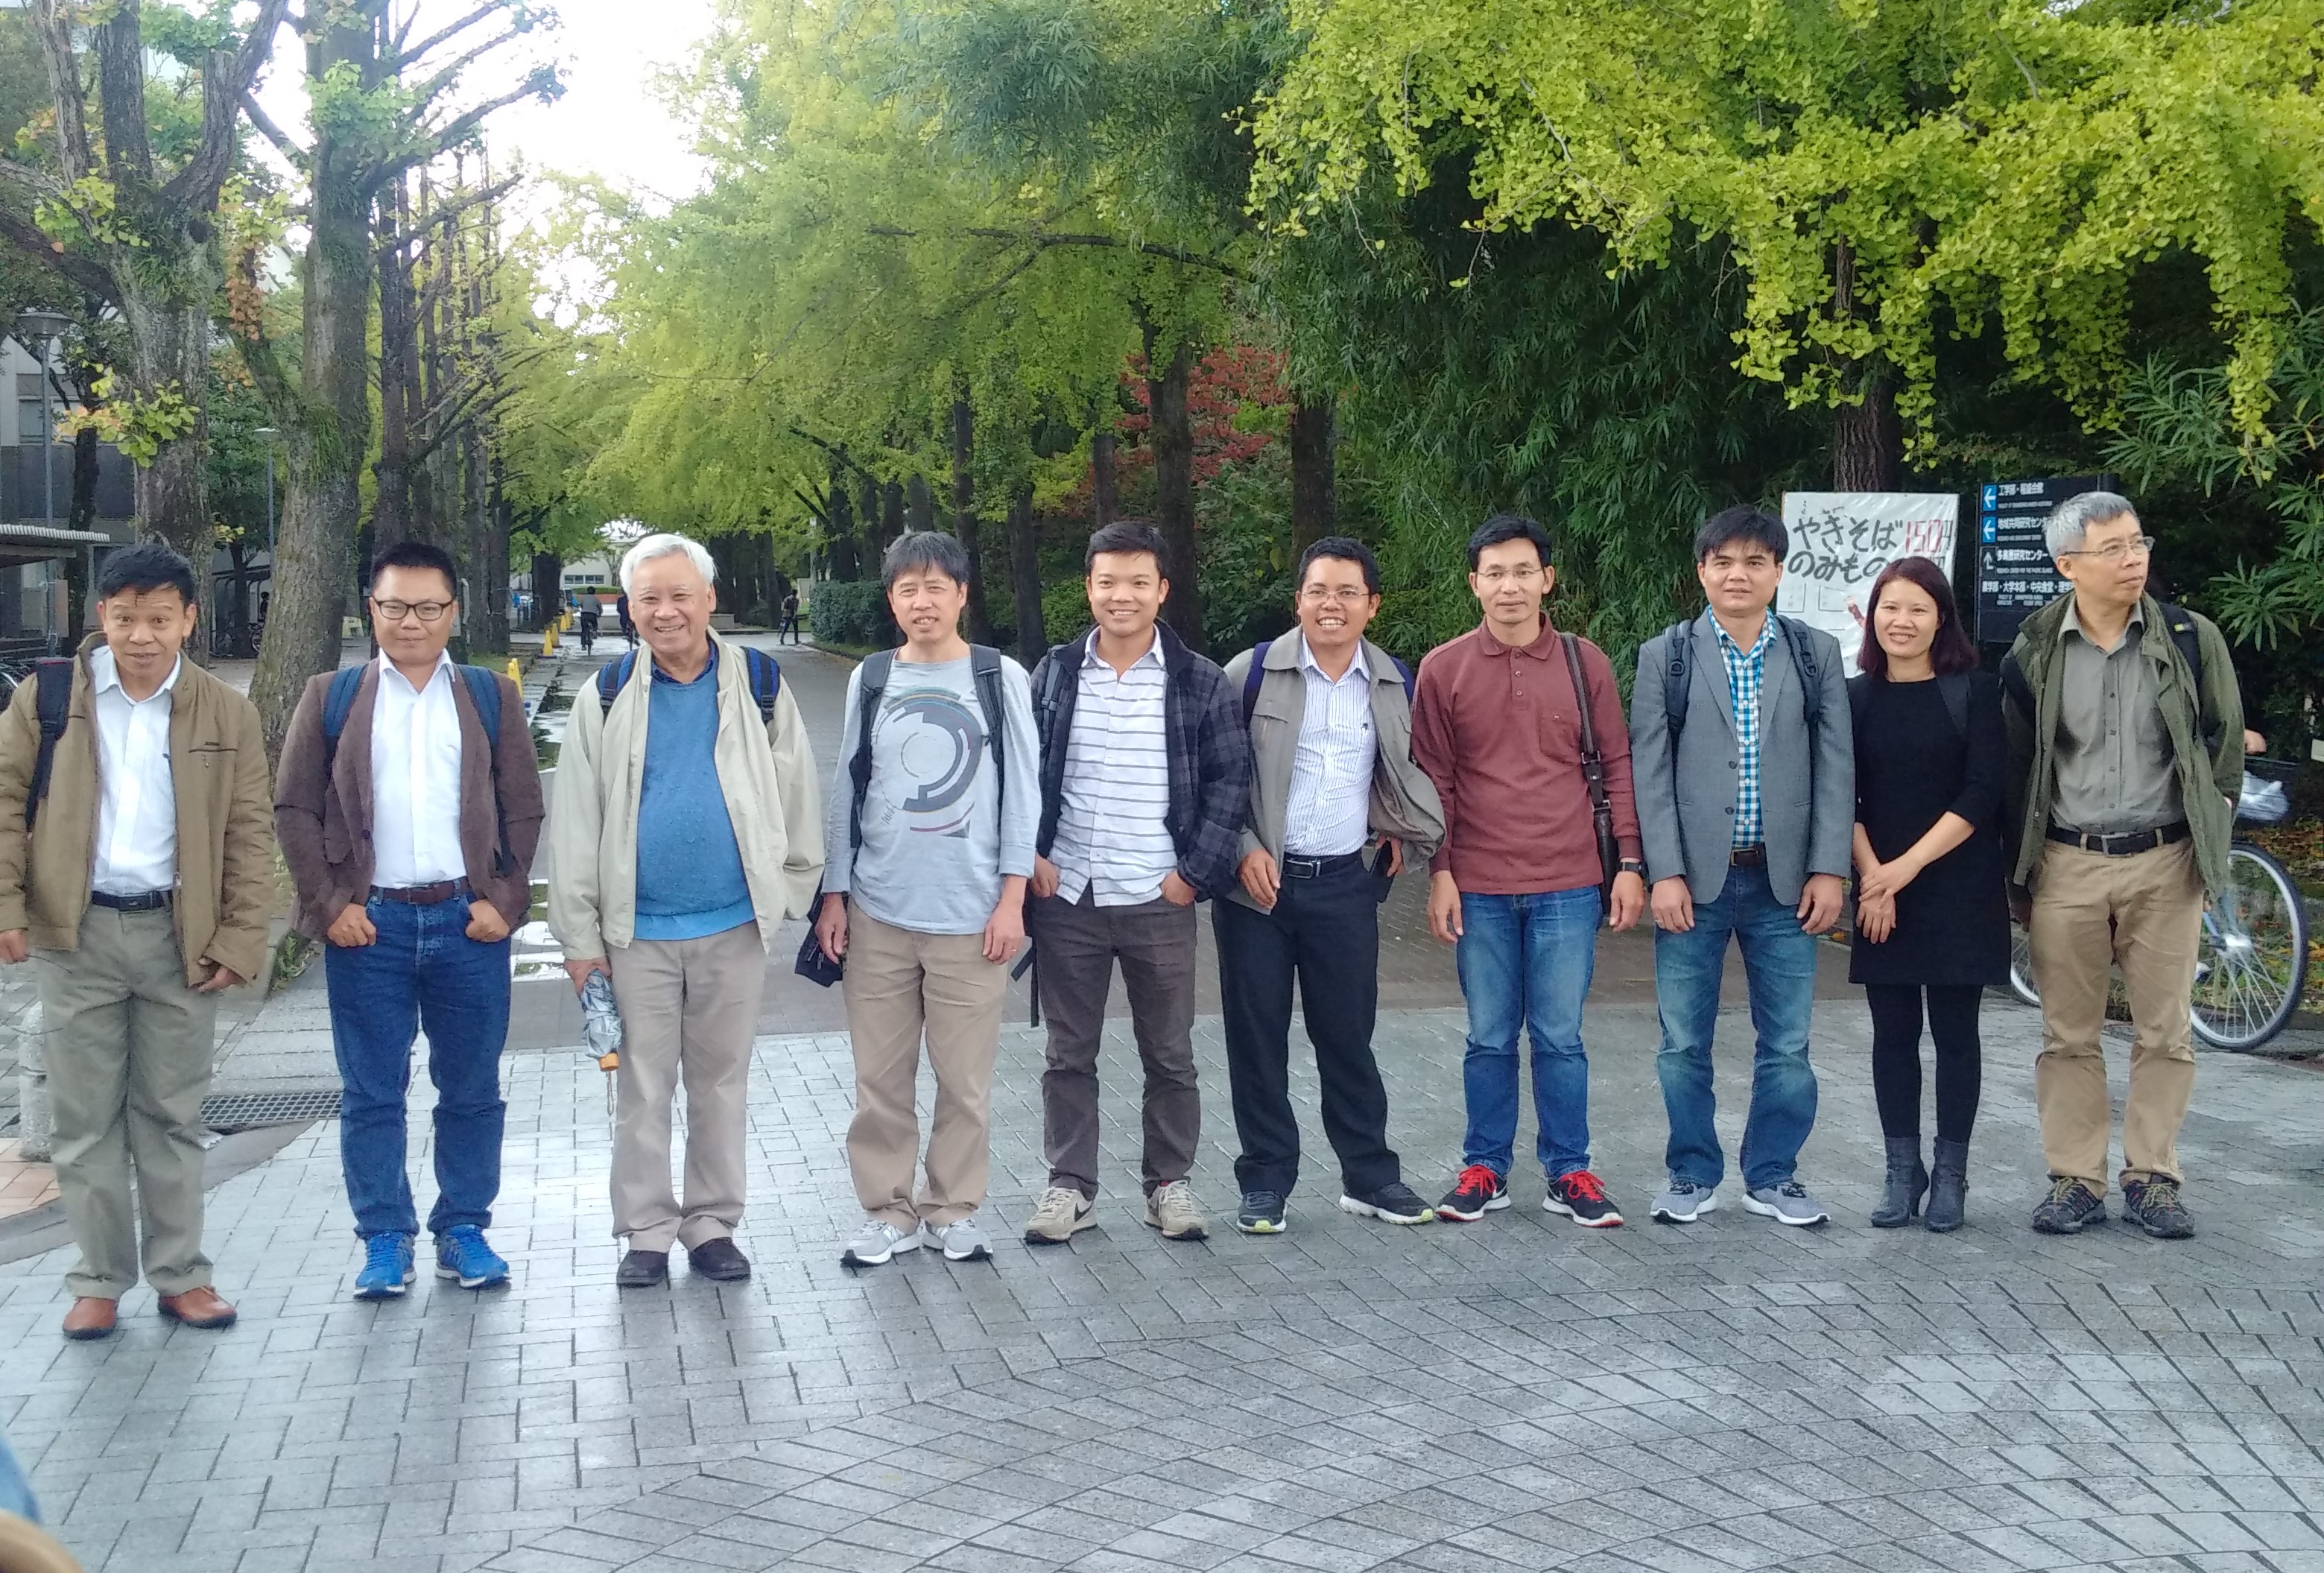 GS. Hà Huy Vui và PGS.TS. Phạm Tiến Sơn (thứ 2 và 3 từ trái sang) cùng nhóm nghiên cứu Lý thuyết kỳ dị ở Nhật Bản.